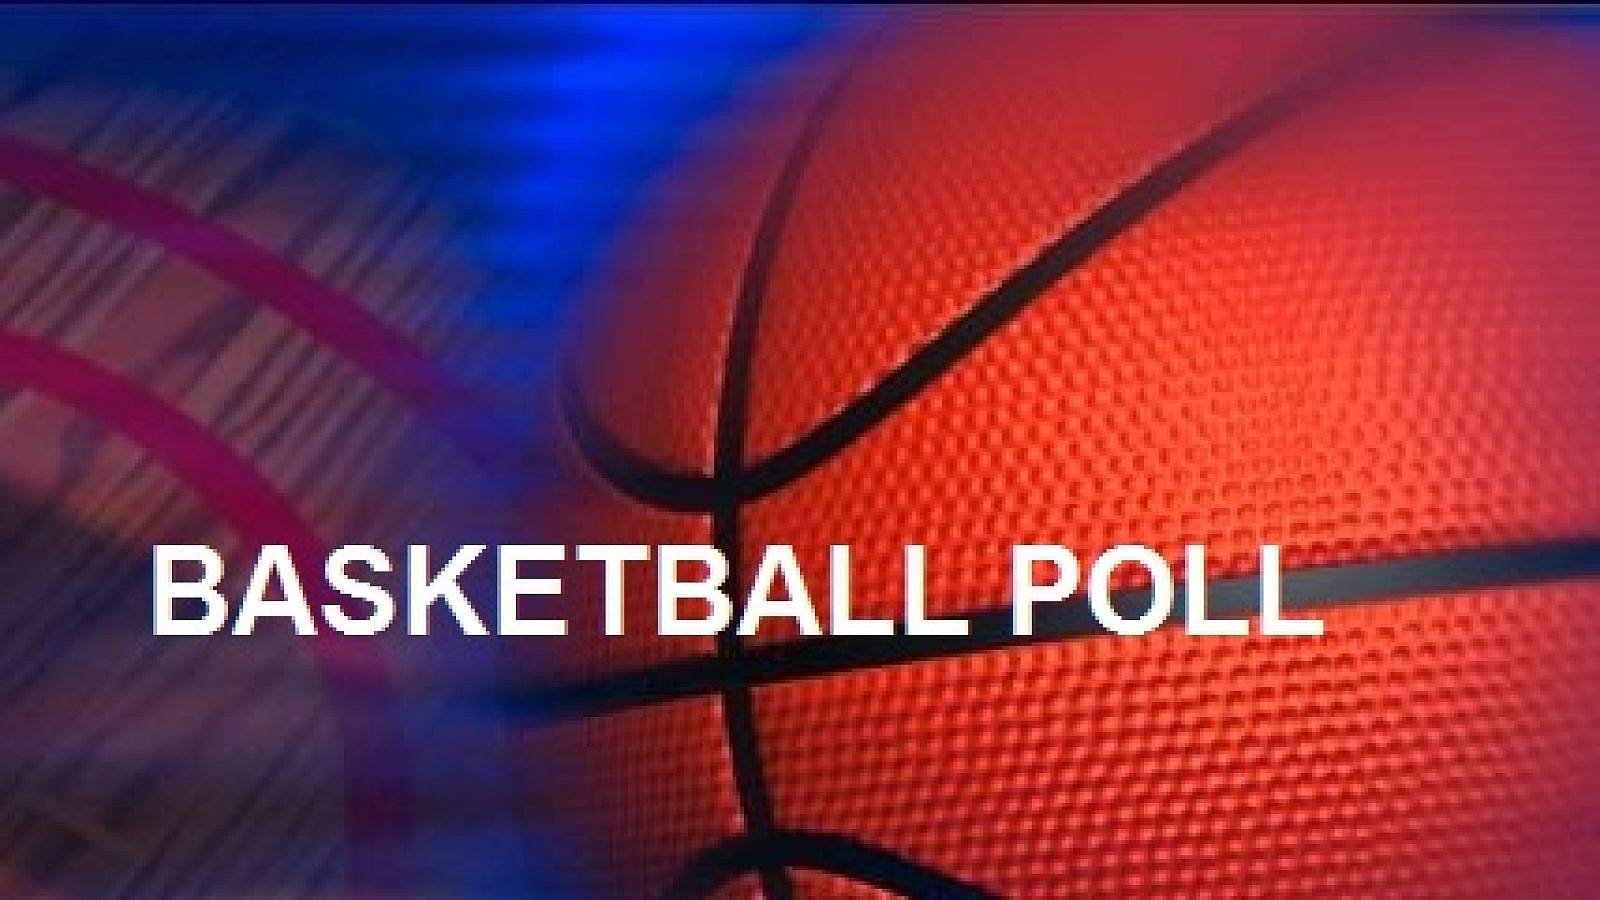 Basketball-Poll-News